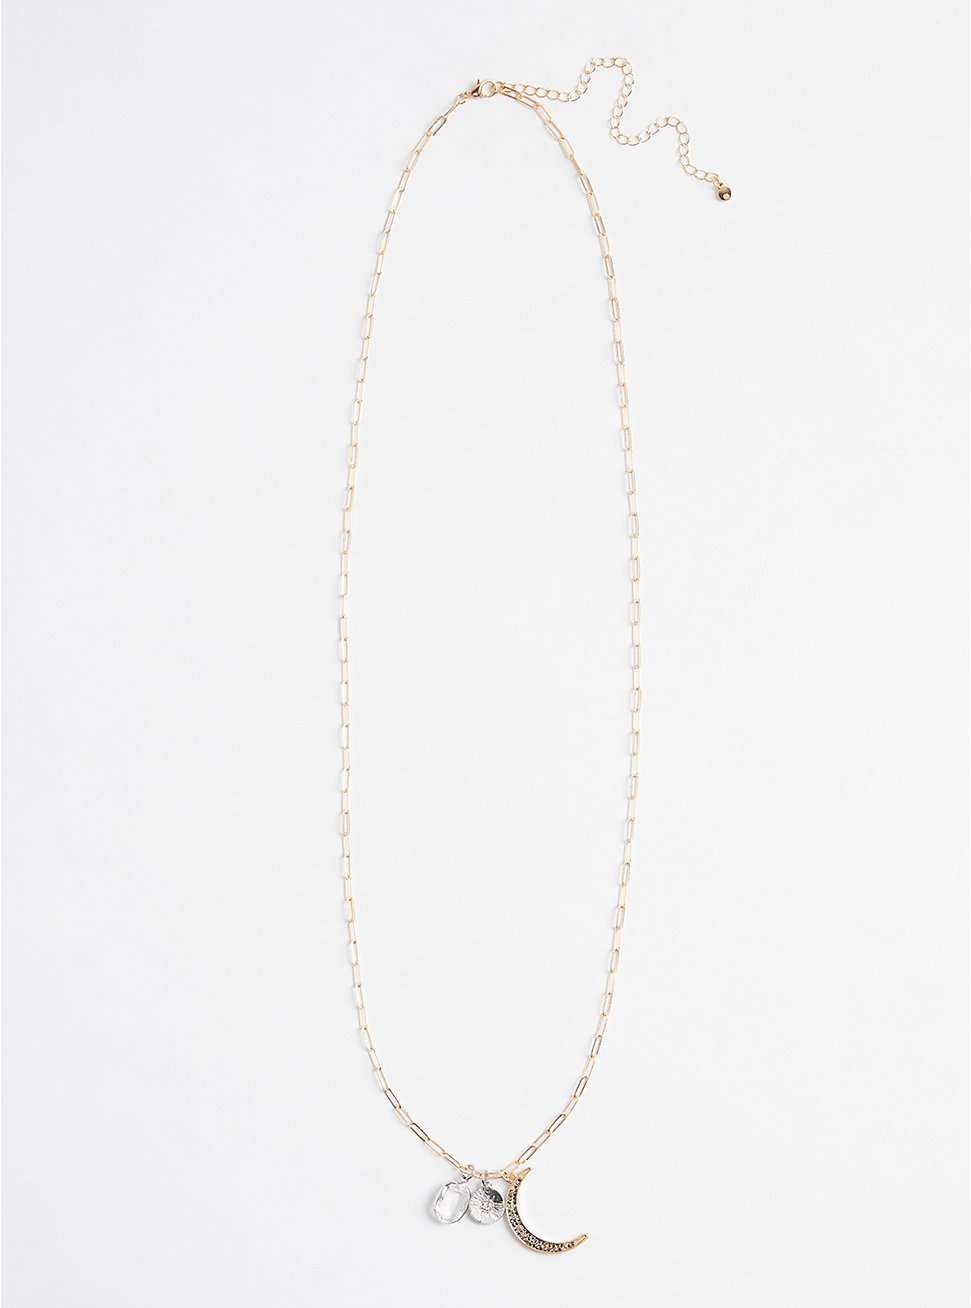 Plus Size Moon Pendants Necklace - Gold Tone, , hi-res